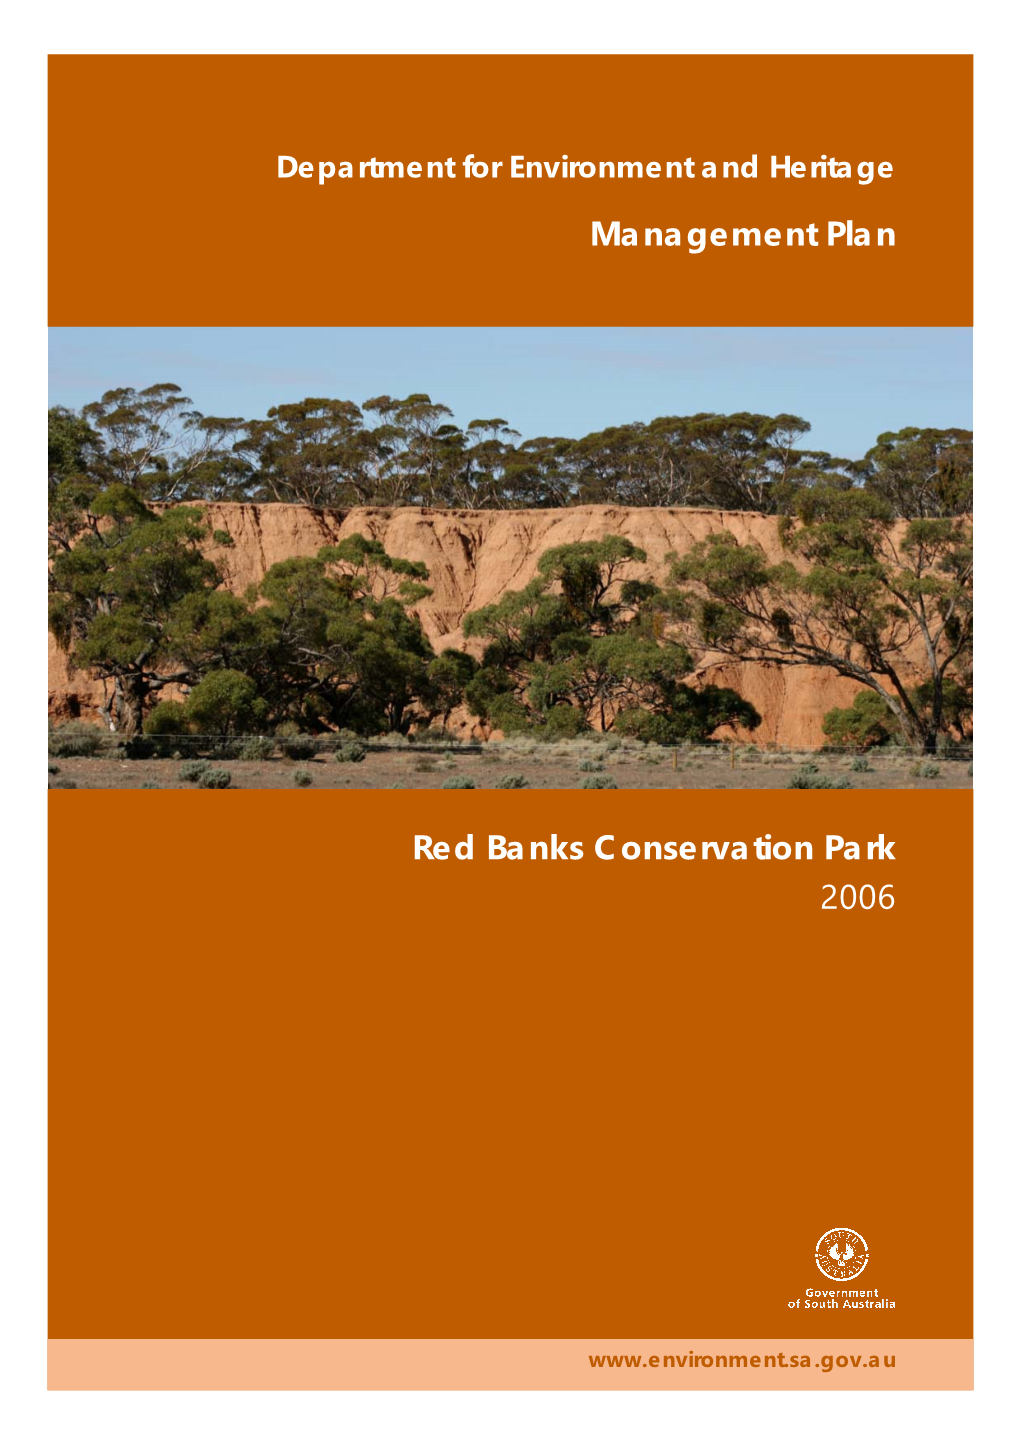 Red Banks Conservation Park 2006 Management Plan